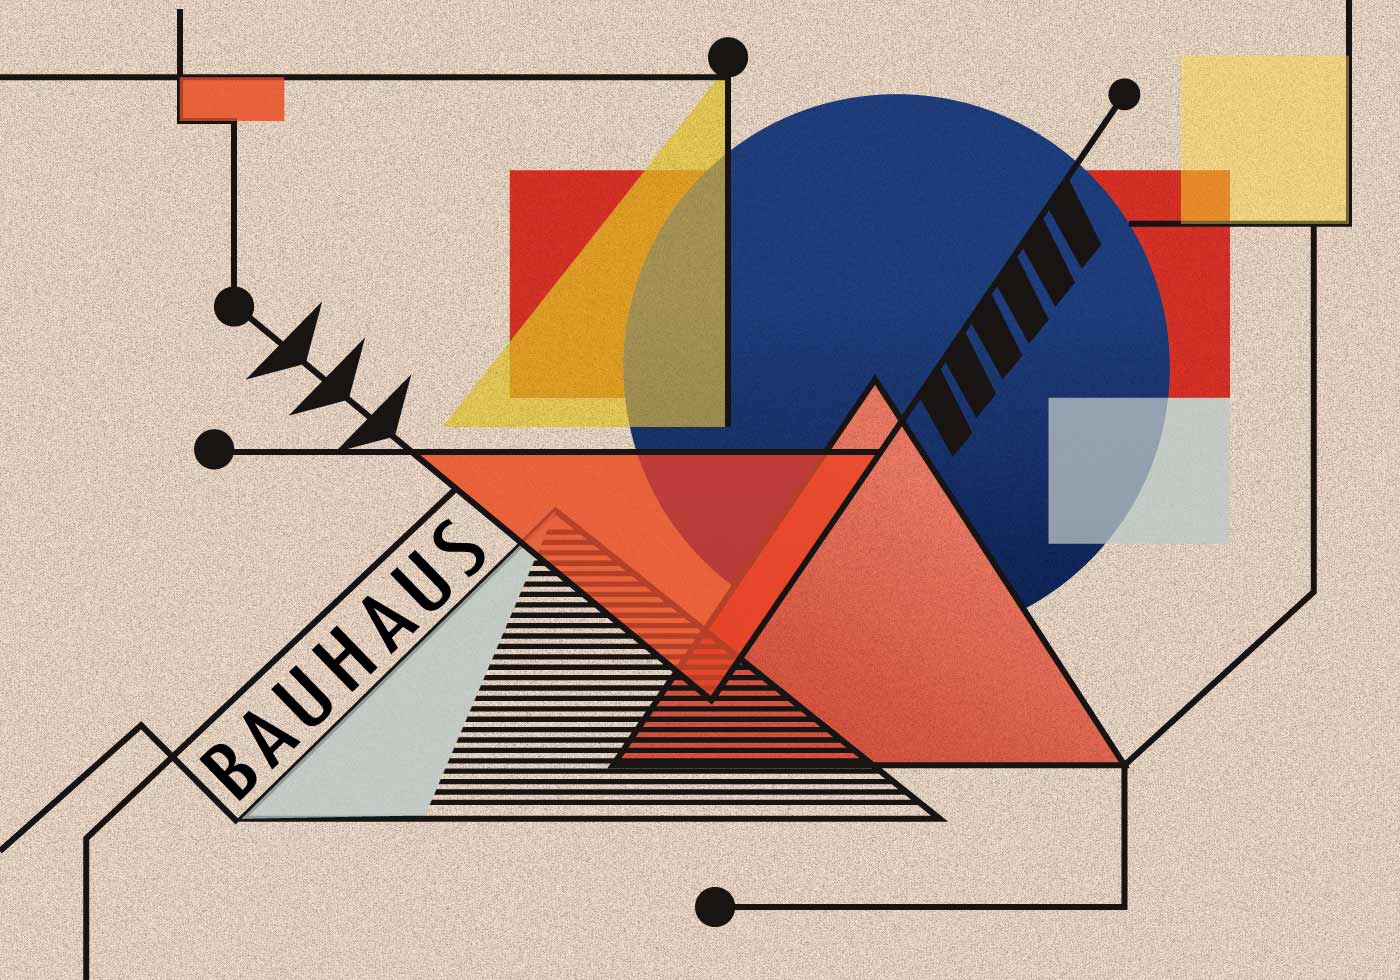 Bauhaus #2